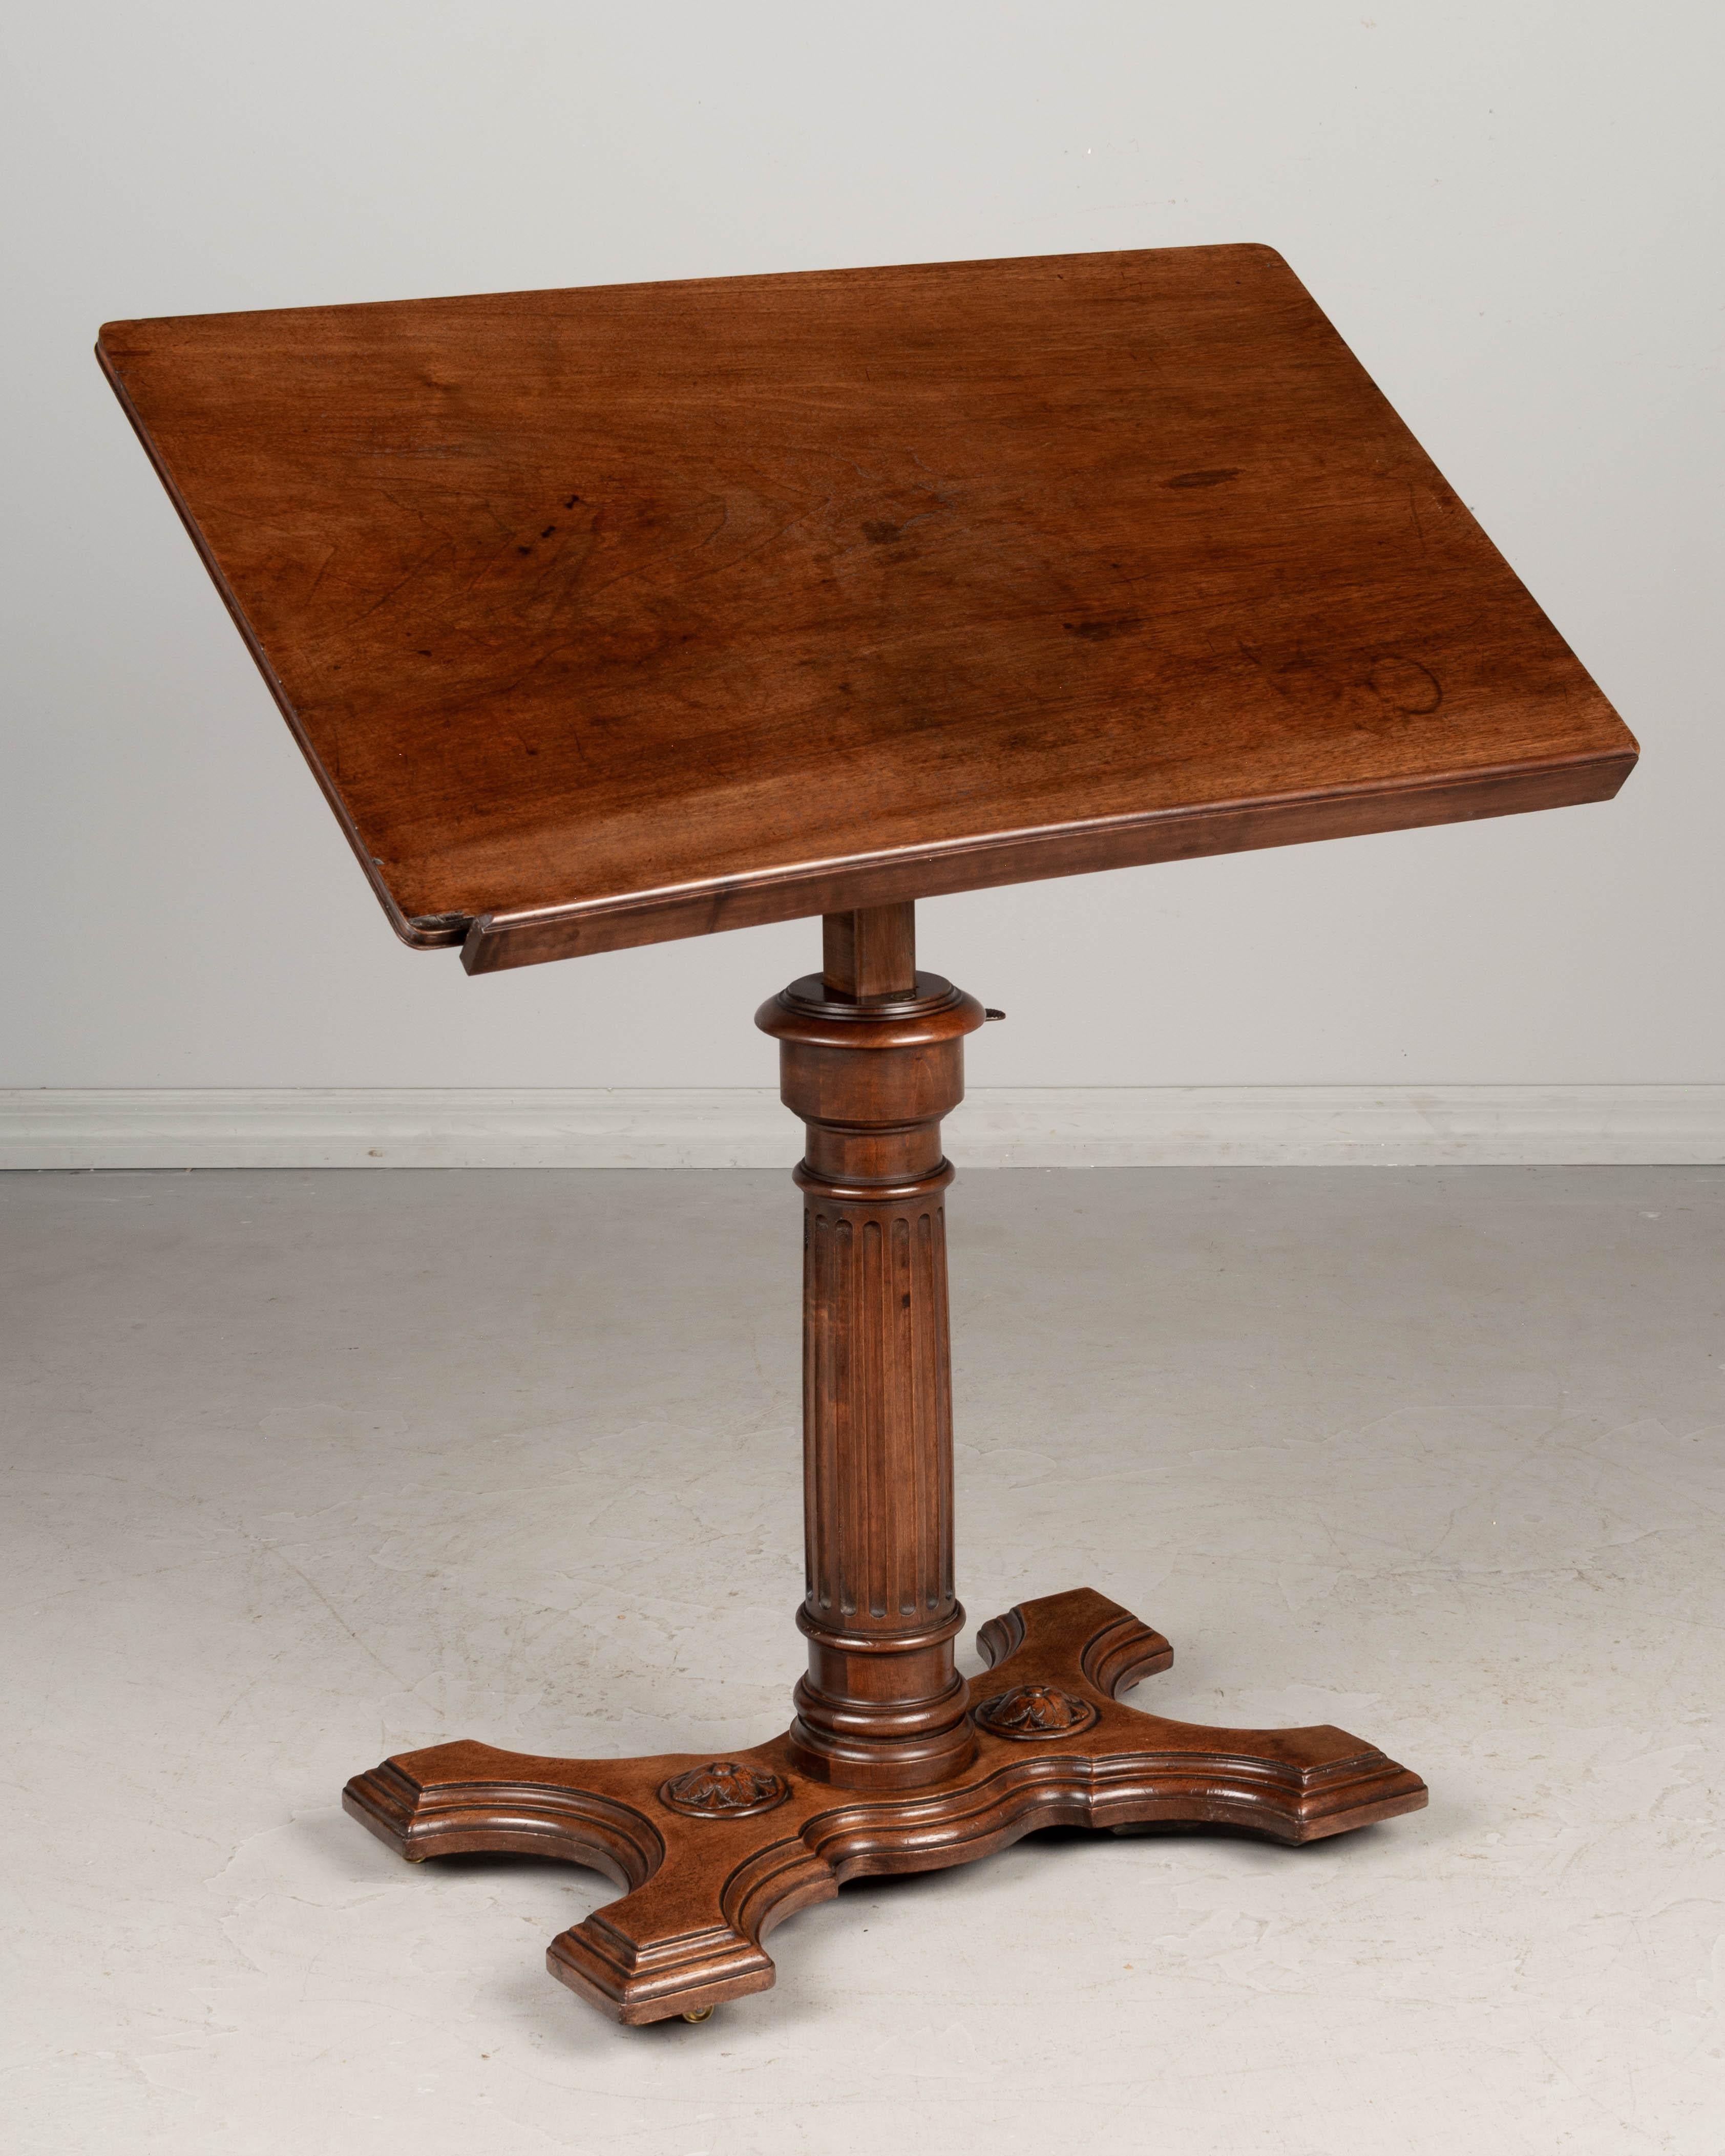 Verstellbarer Schreibtisch oder Staffelei aus dem 19. Jahrhundert (Louis Philippe)